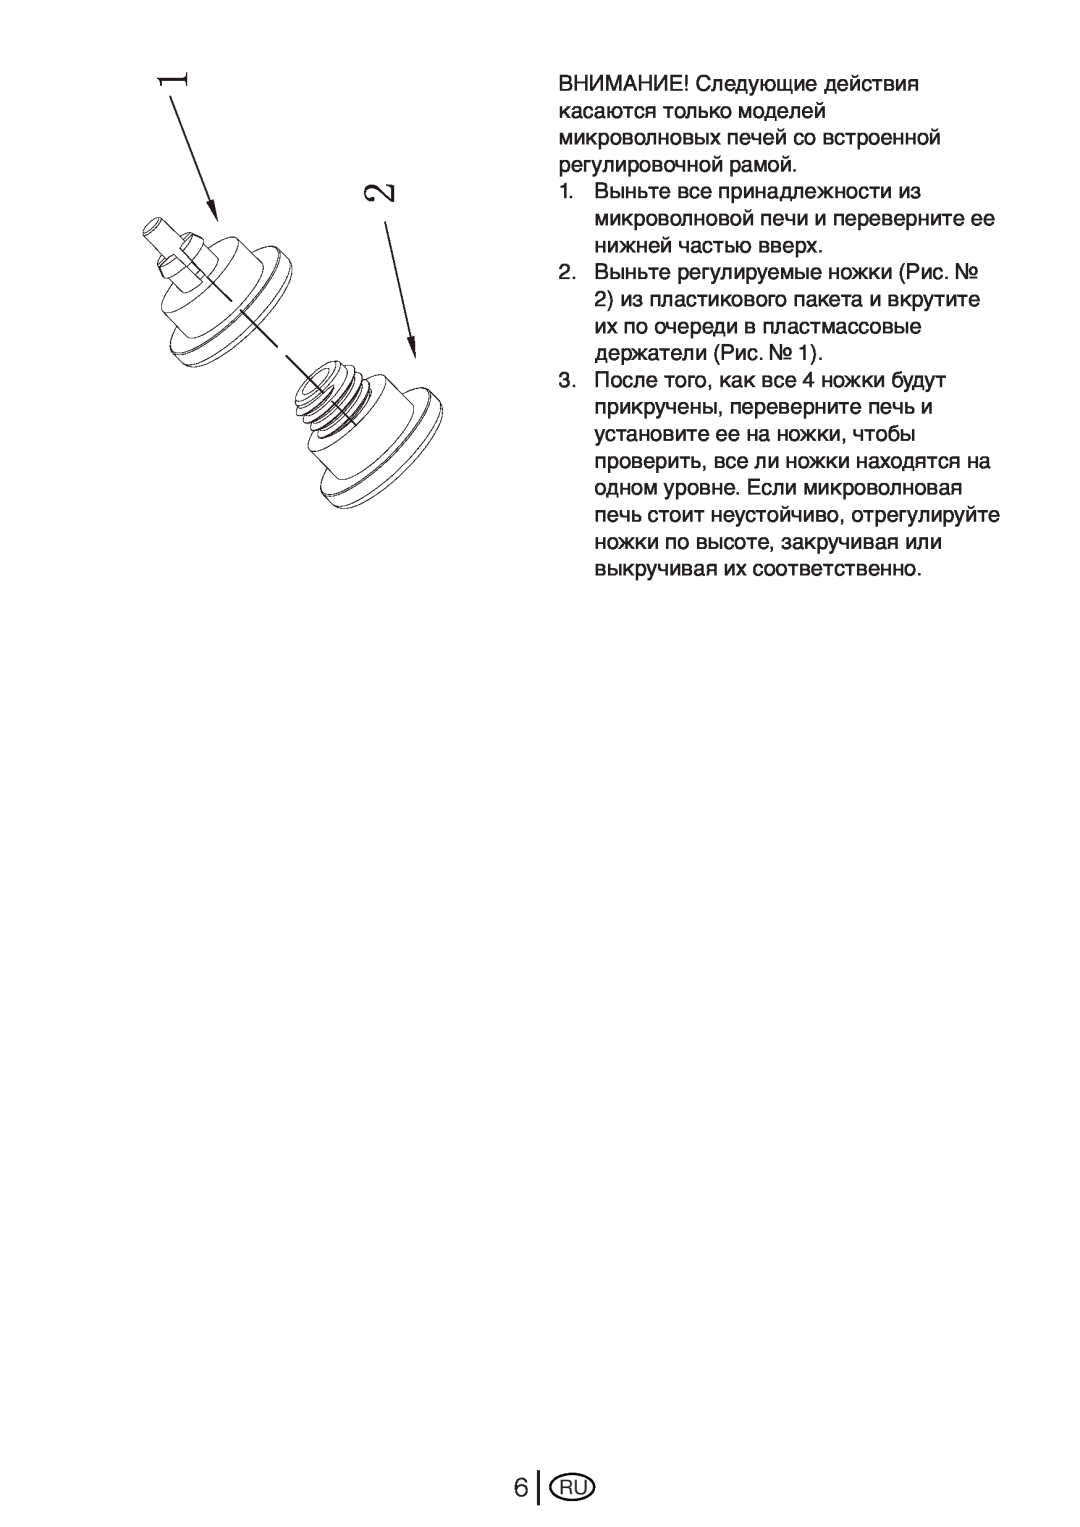 Beko MWB 2510 EX instruction manual 2.Выньте регулируемые ножки Рис 